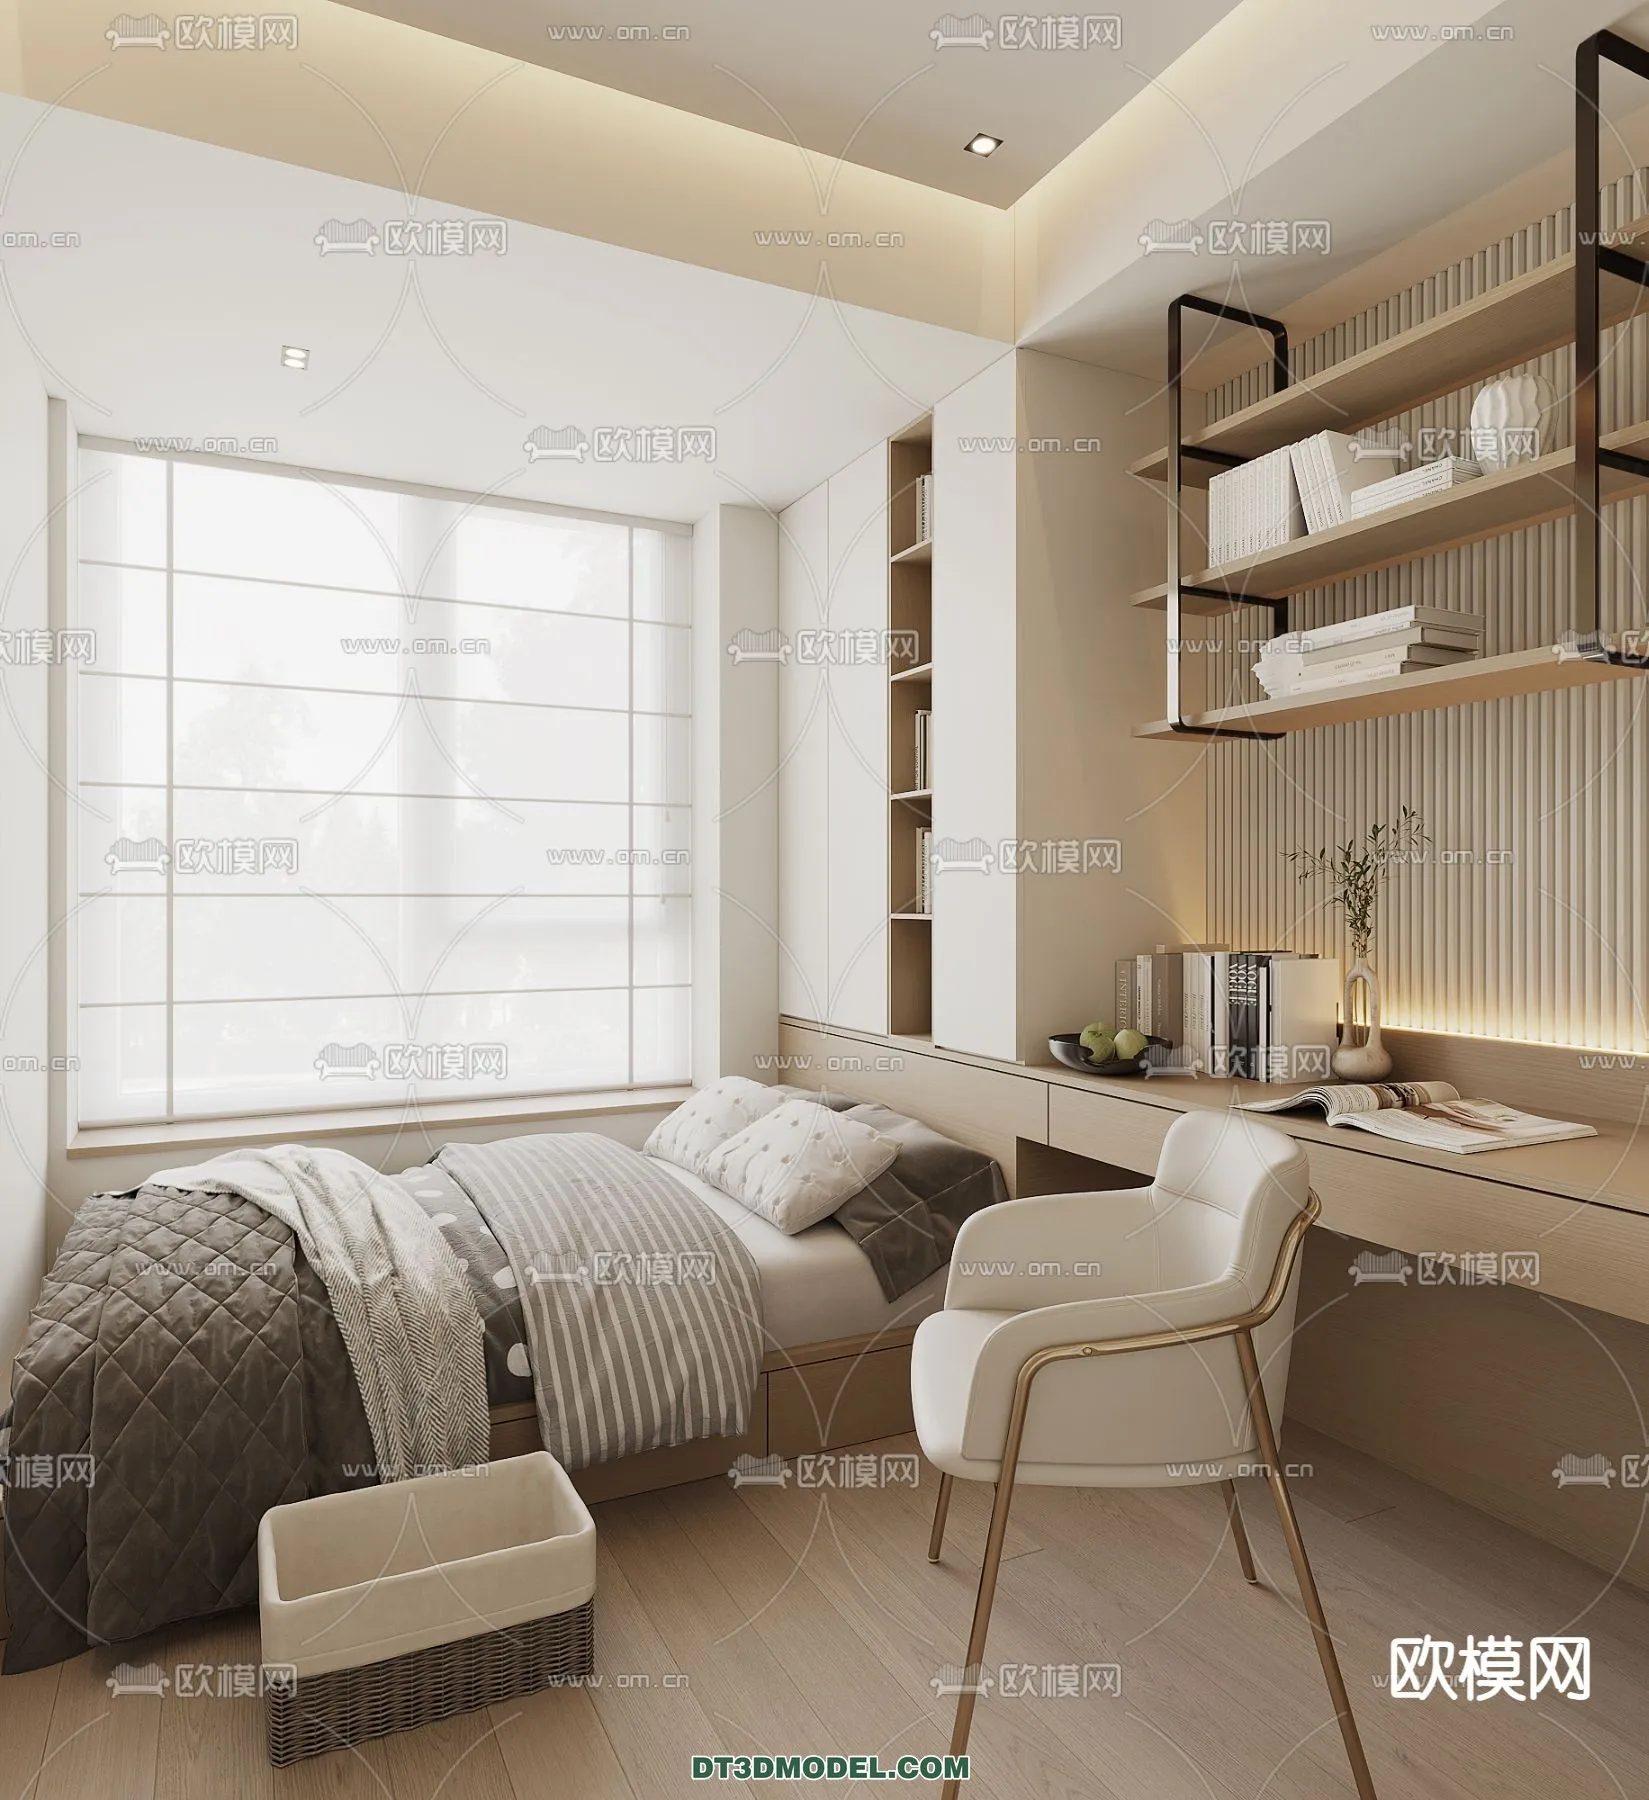 Tatami Bedroom – Japan Bedroom – 3D Scene – 004